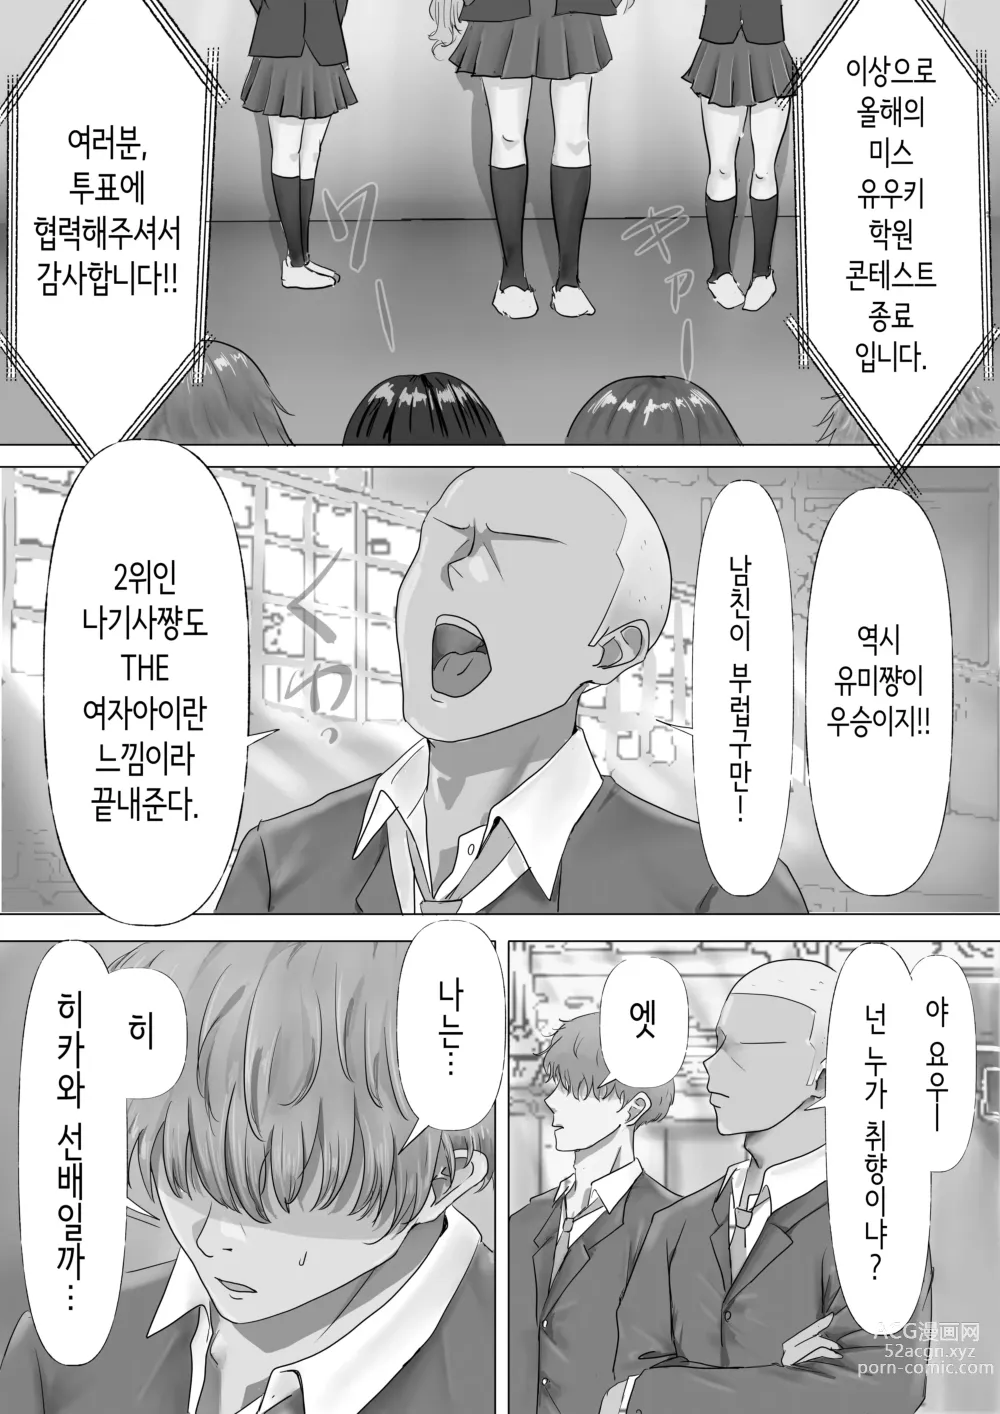 Page 4 of doujinshi 과묵하고 긴 흑발의 거유 풍기위원장을 미친듯이 따먹고 싶다